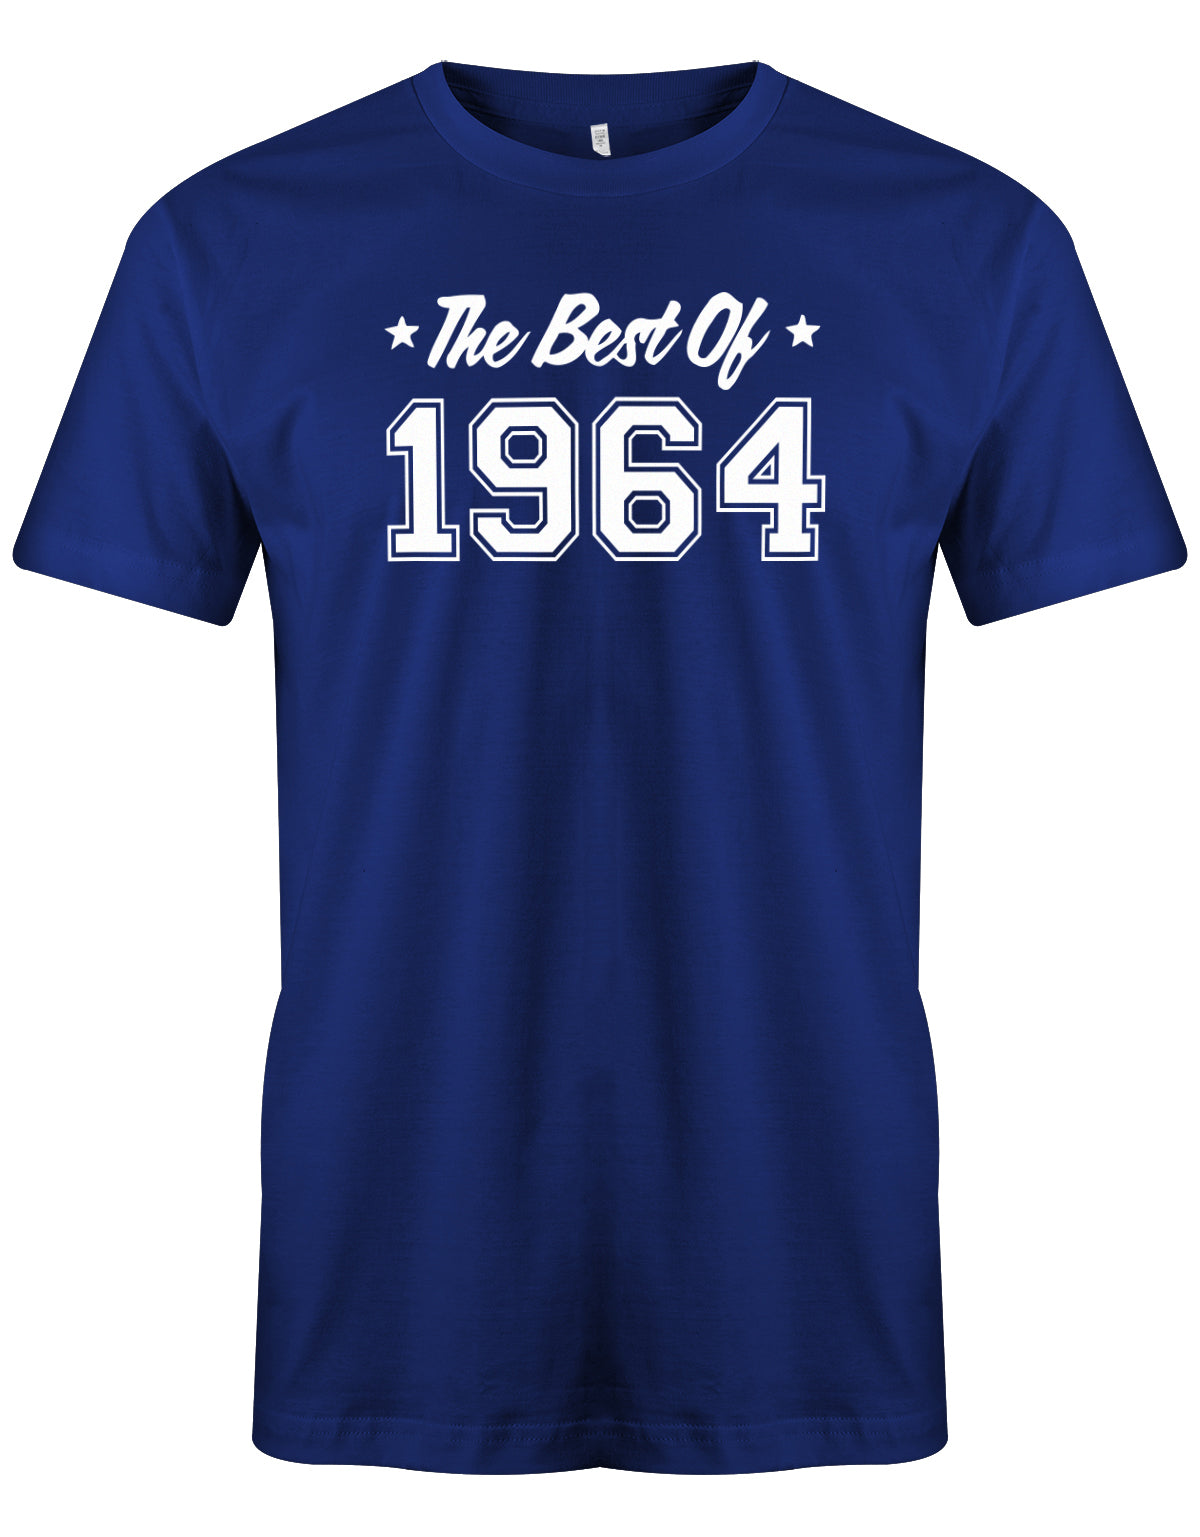 The best of 1964 Geburtstag - Jahrgang 1964 Geschenk Männer Shirt